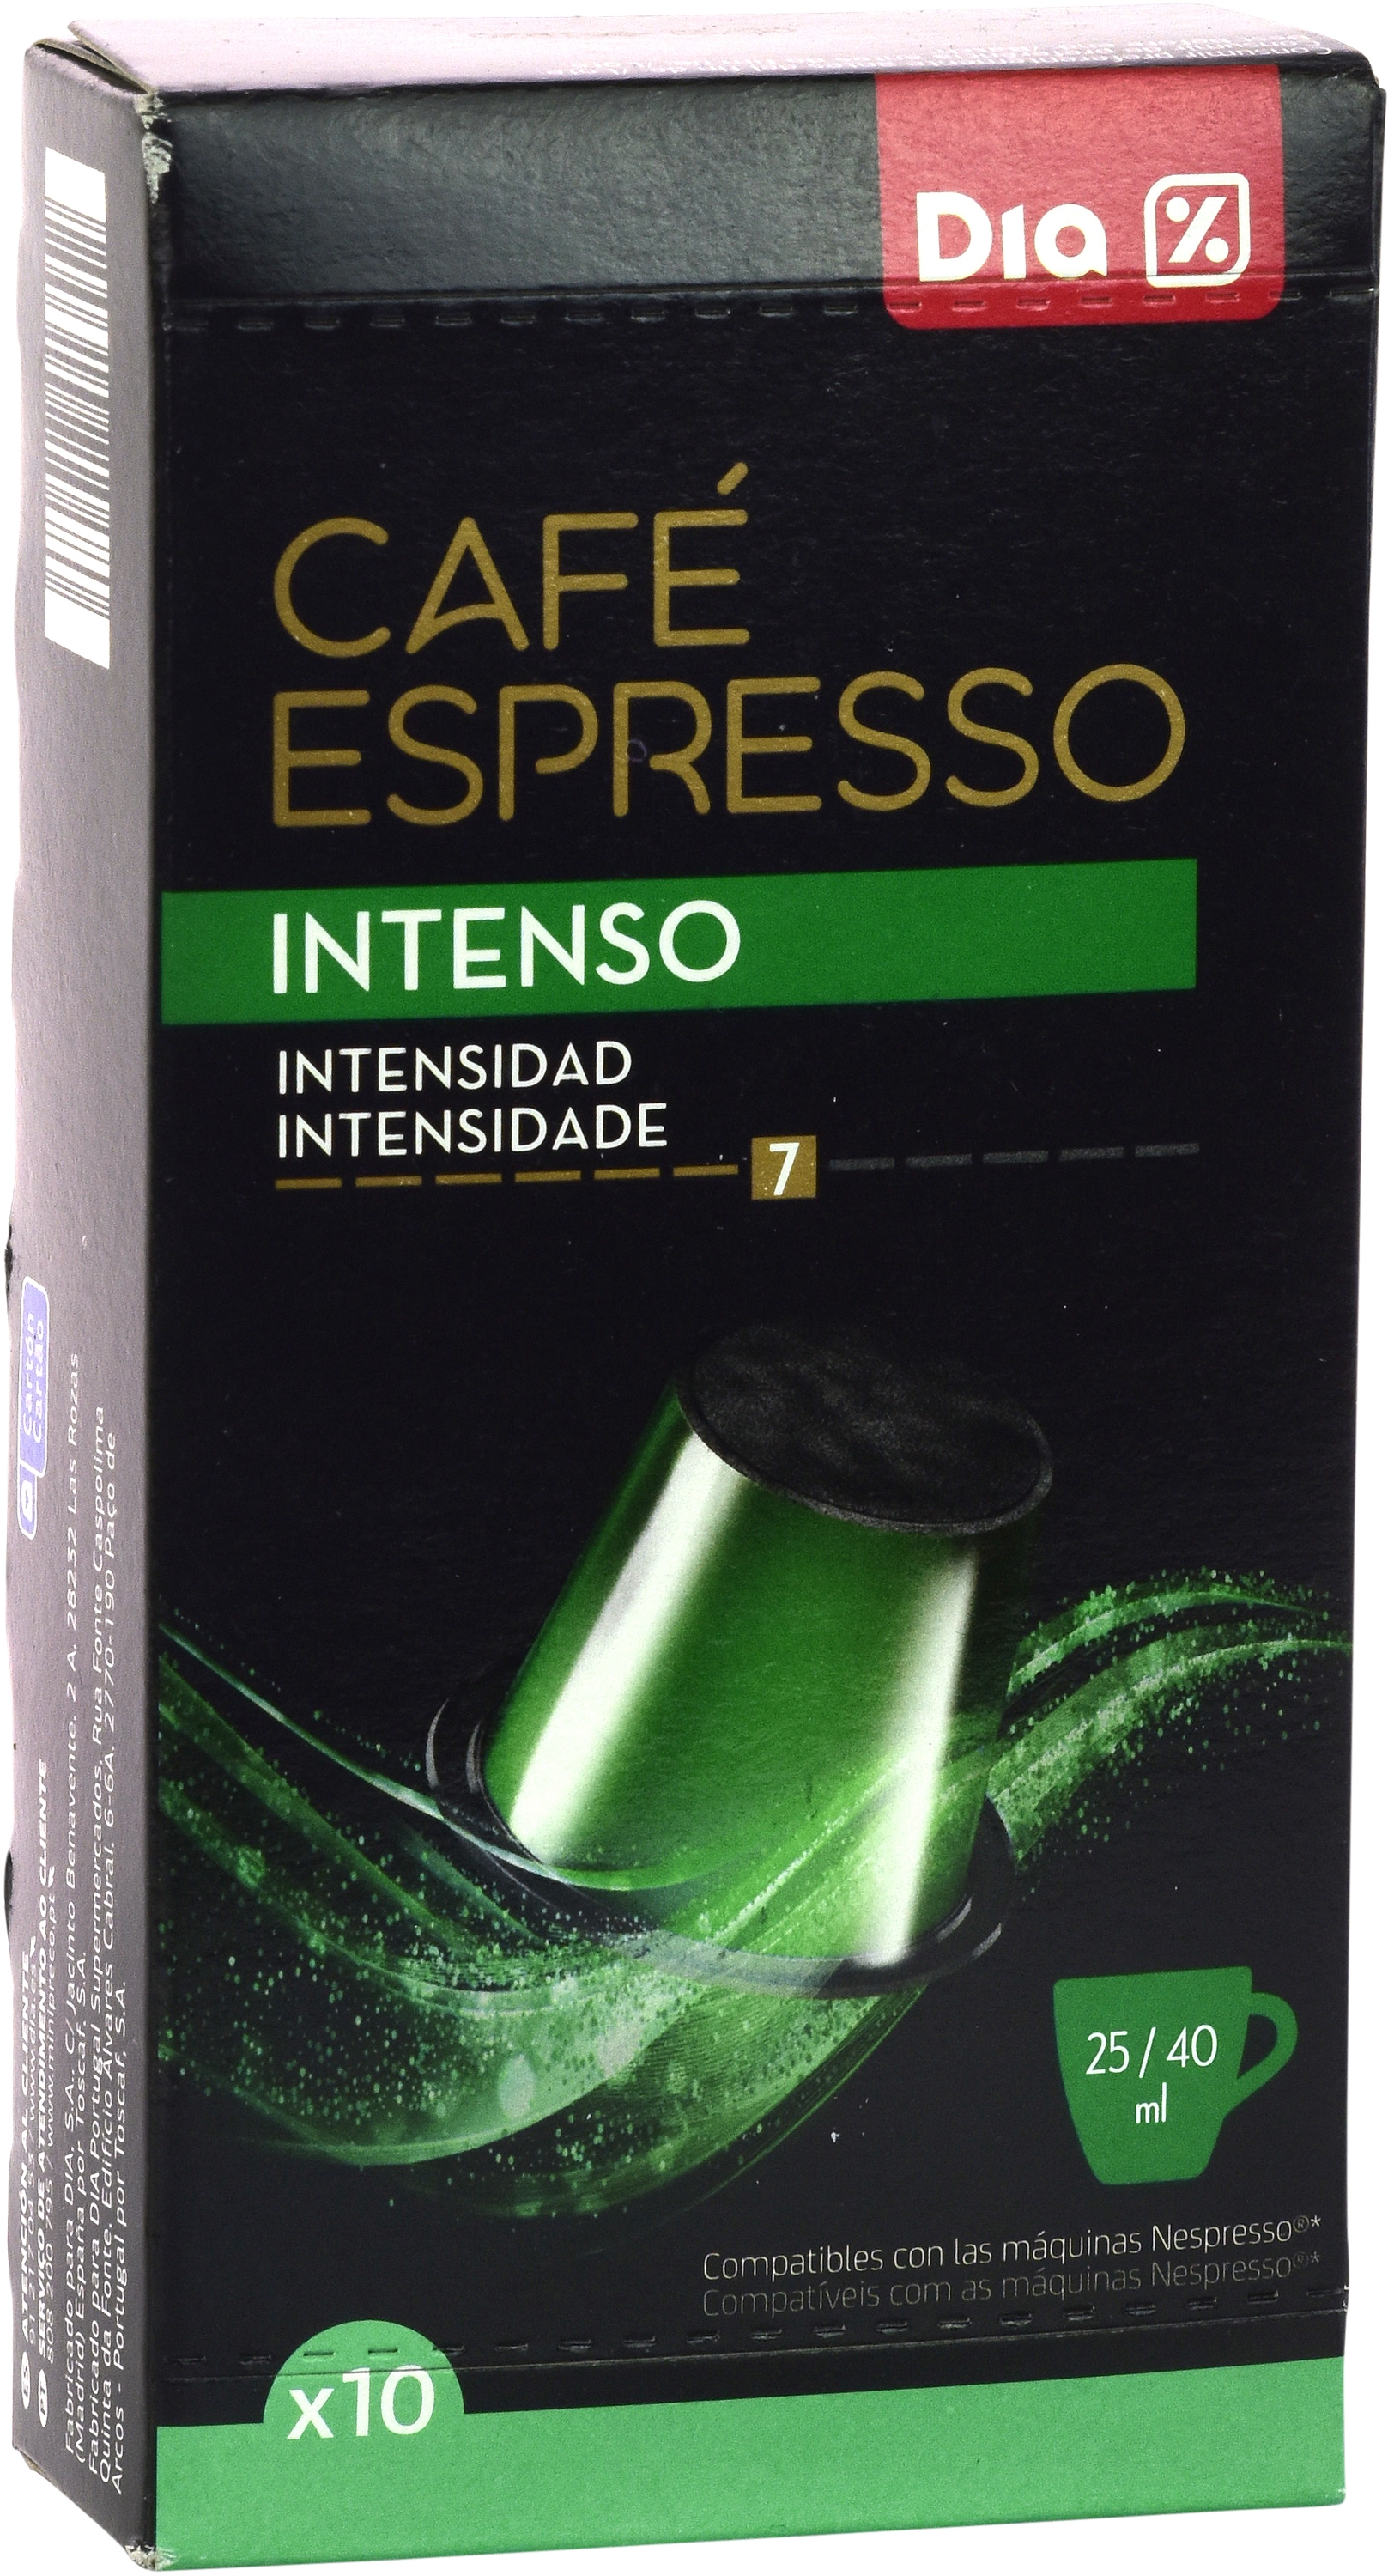 CAFE ESPRESSO INTENSO 7